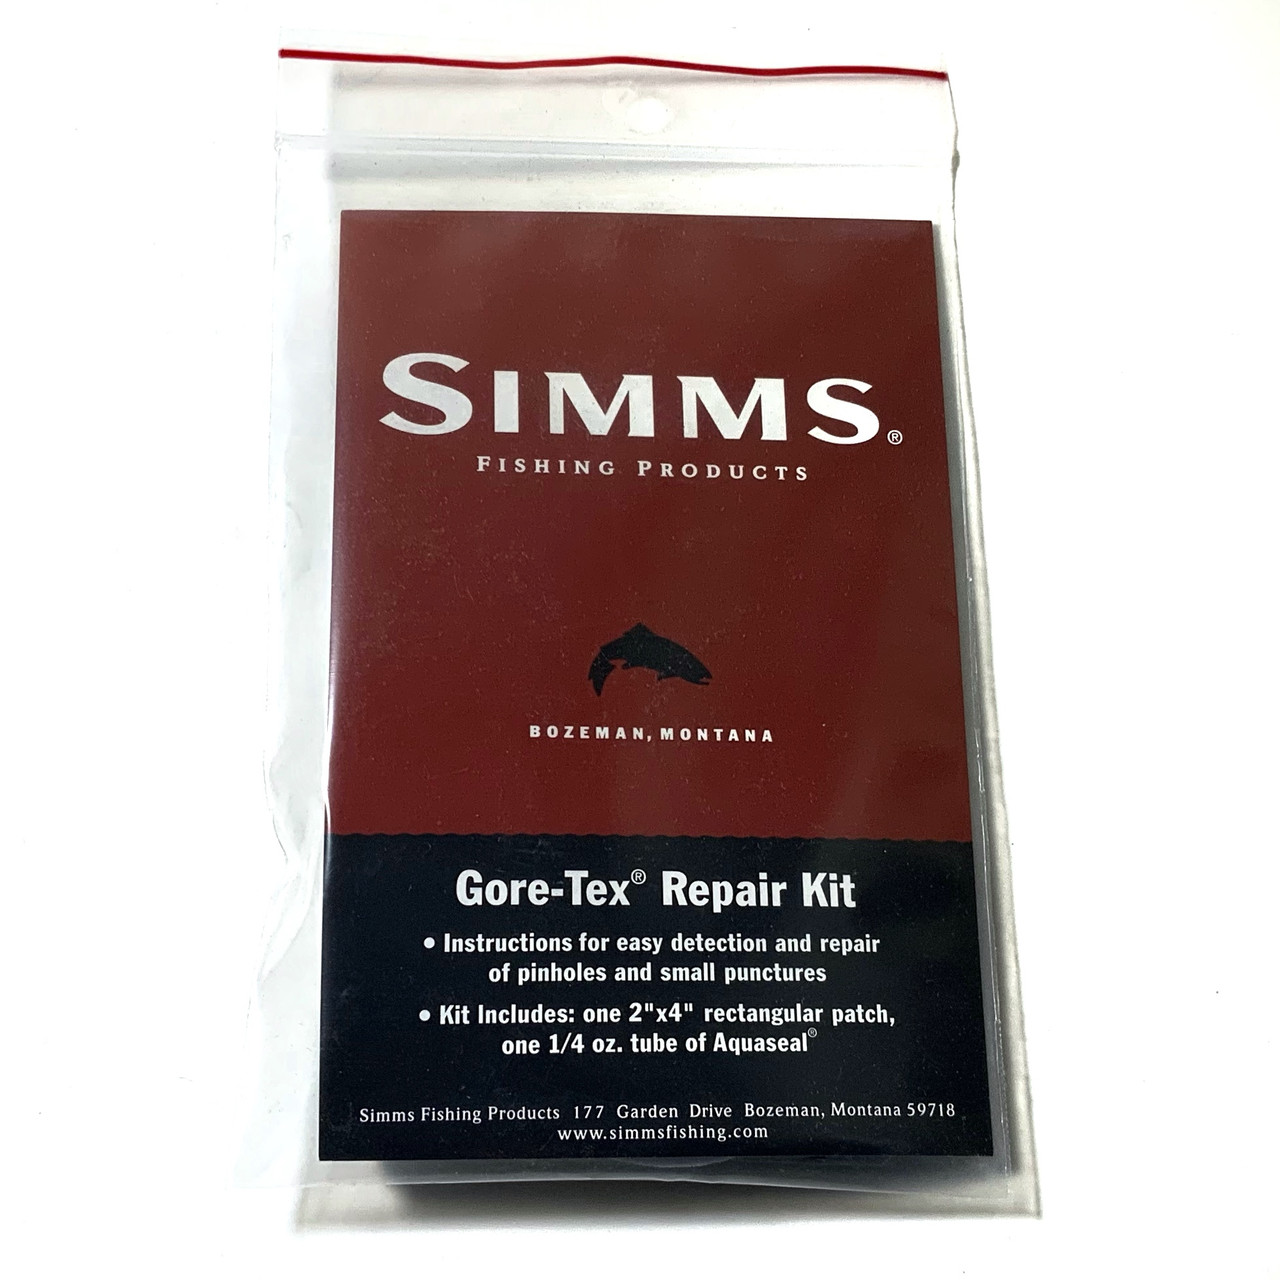 Simms Field Repair Kit